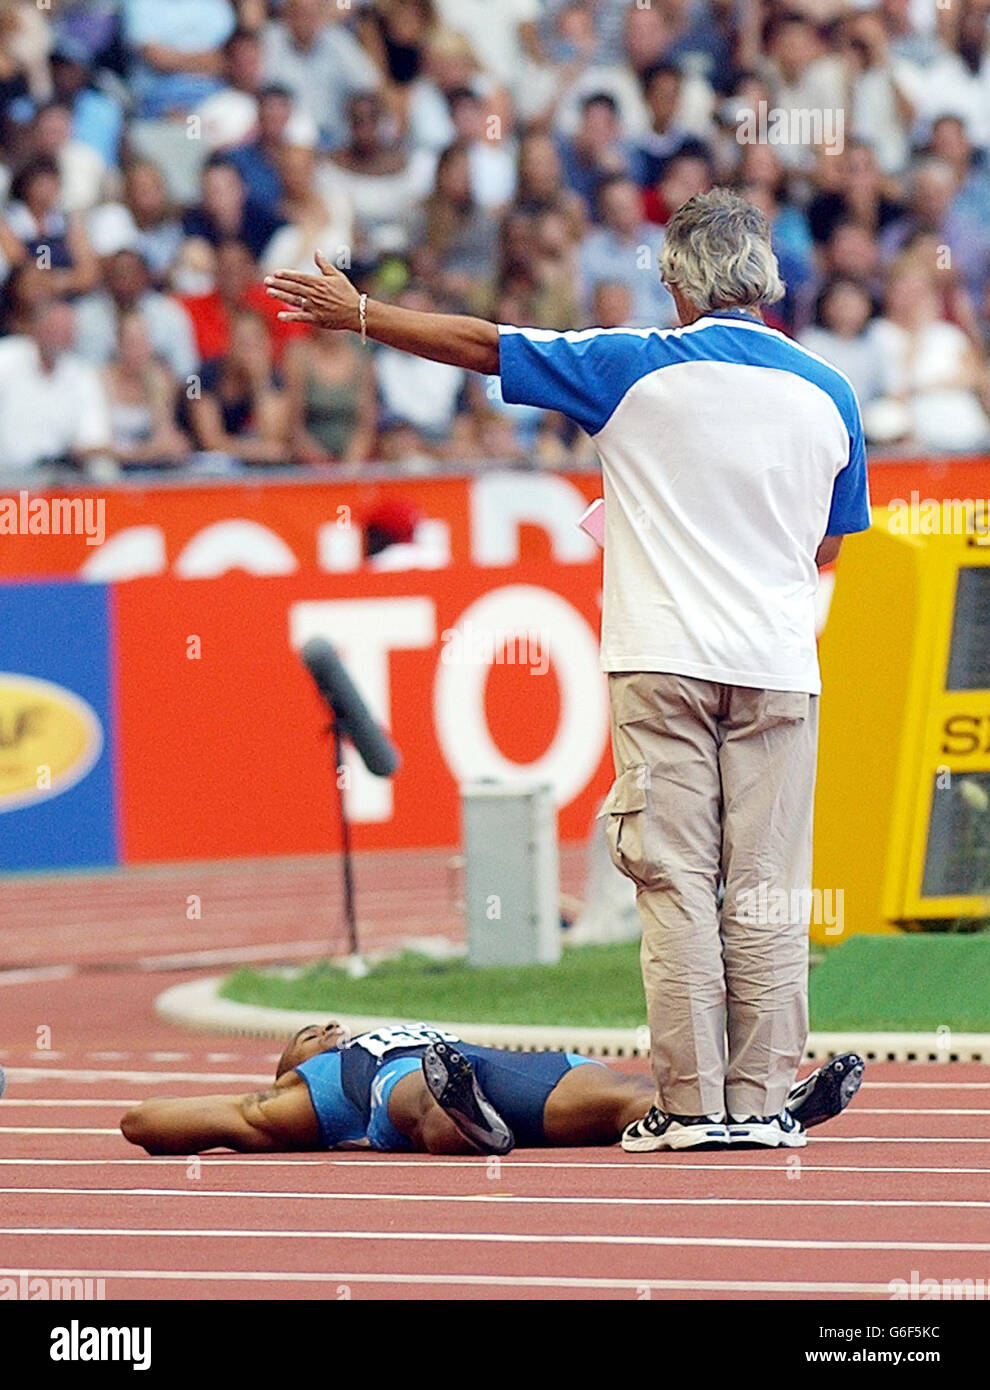 Jon Drummond (en bas) des États-Unis se trouve sur le dos, refusant de sortir de la piste après qu'il ait été disqualifié dans le quart-finale du 100m masculin aux Championnats du monde d'athlétisme à Paris, en France, le dimanche 24 août 2003. Banque D'Images